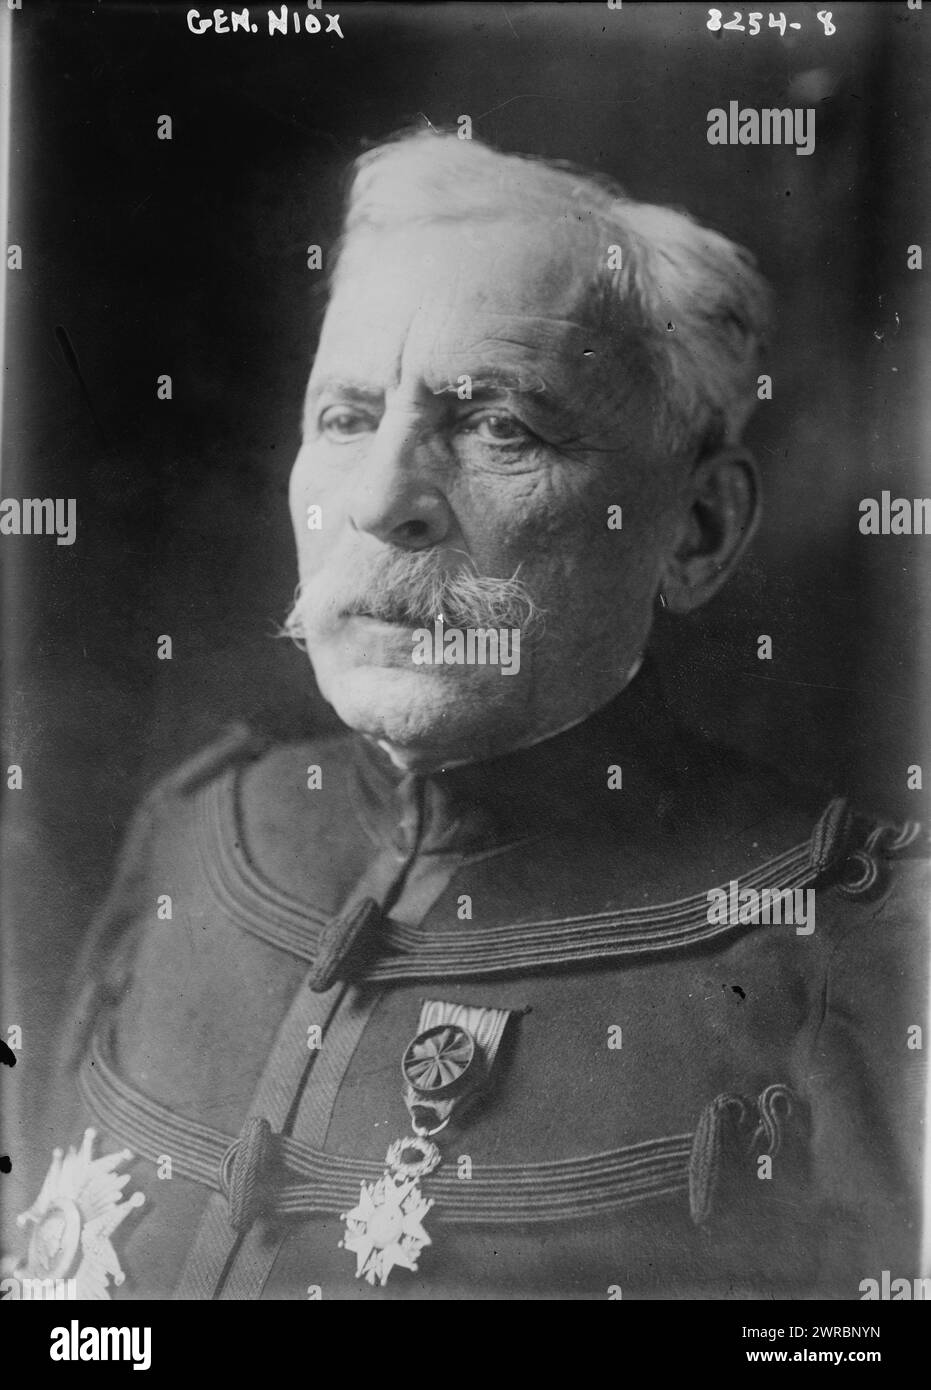 Gen. Niox, la fotografia mostra Gustave Léon Niox (1840-1921), un generale francese che prestò servizio nella prima guerra mondiale e fu anche il governatore del Museo militare Les Invalides., Glass negatives, 1 negative: Glass Foto Stock